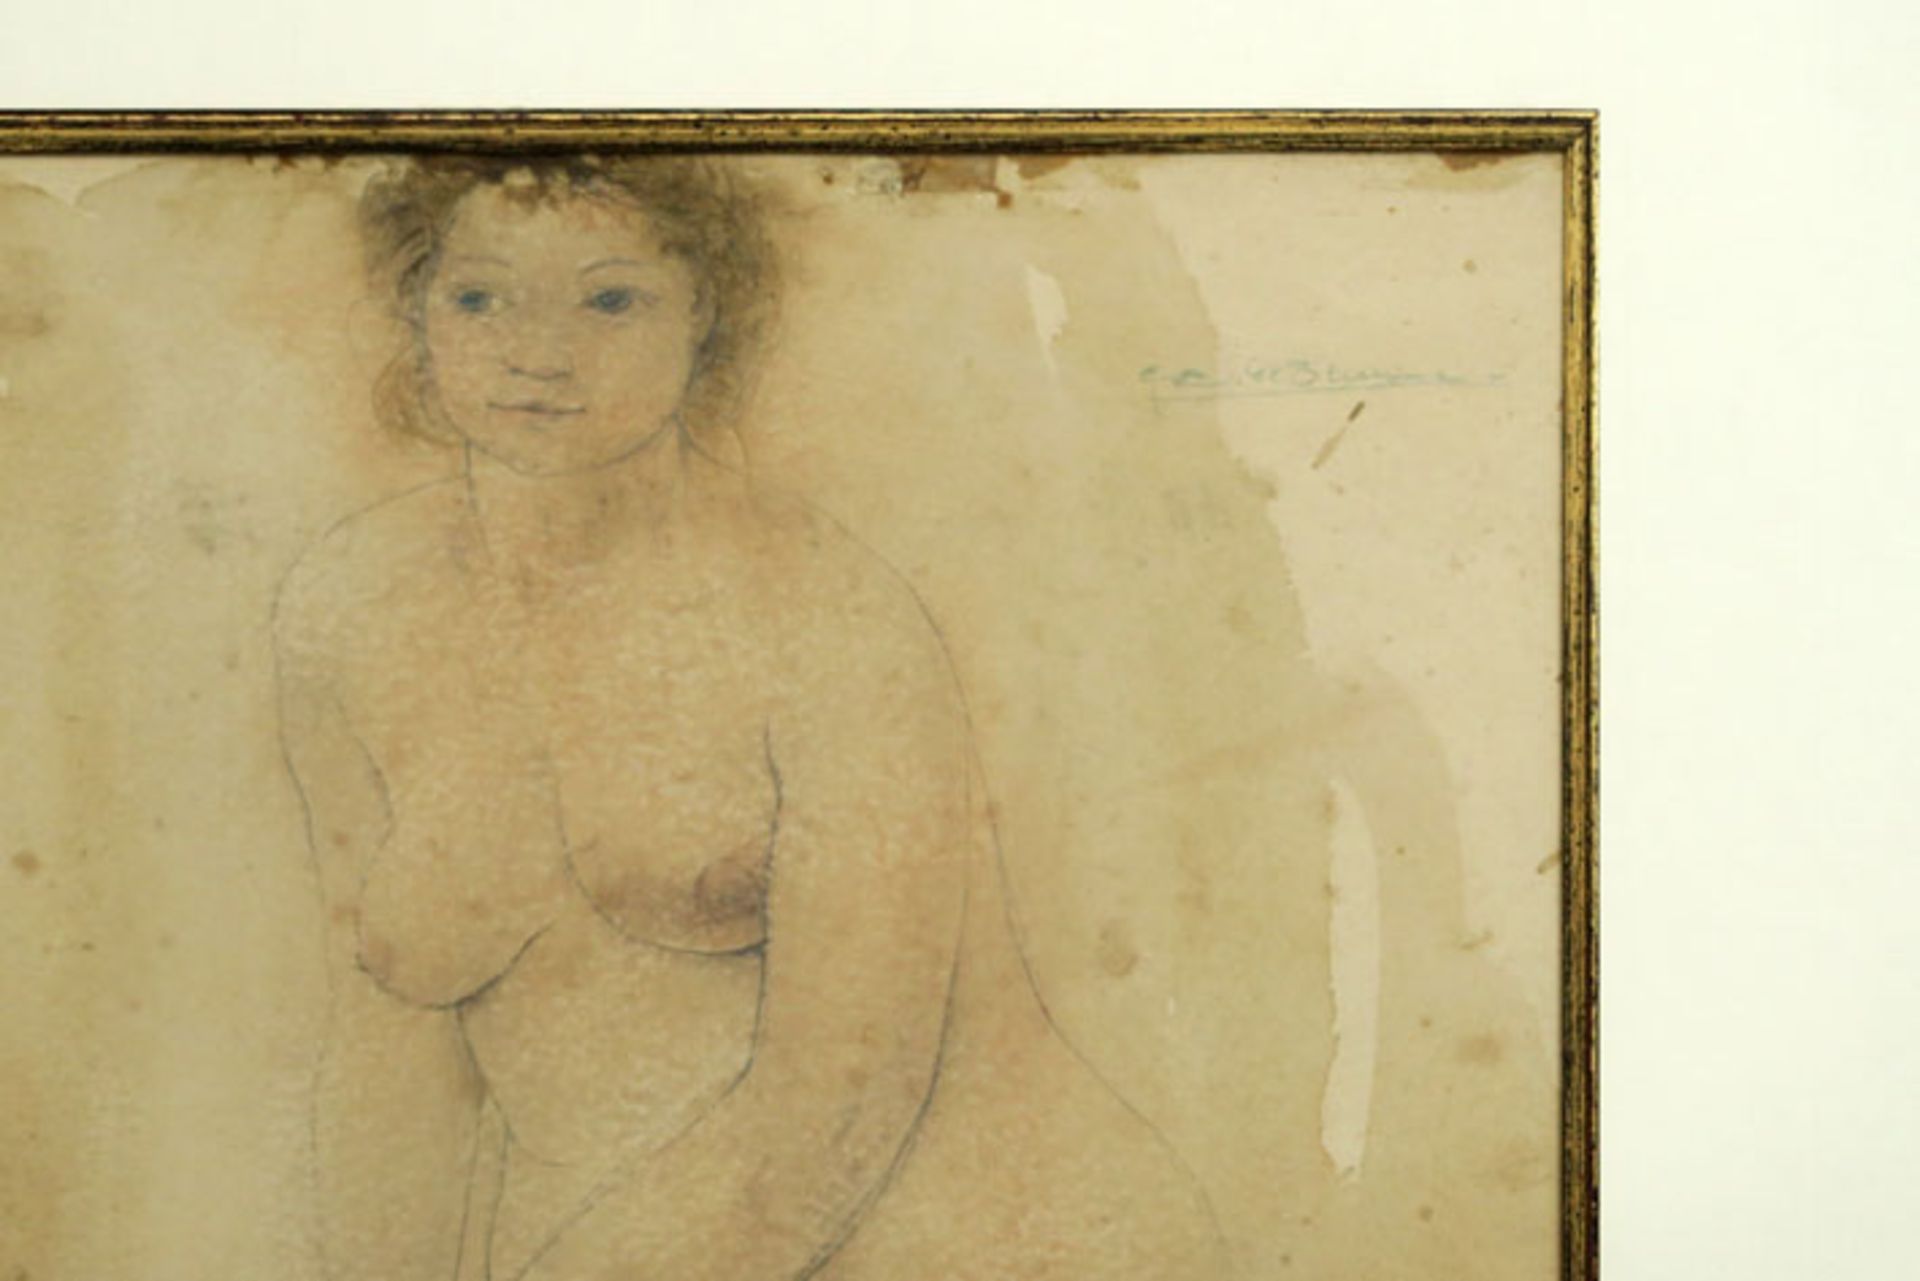 20th Cent. Belgian aquarelle - signed Gustaaf De Bruyne - - DE BRUYNE GUSTAAF [...] - Image 3 of 3